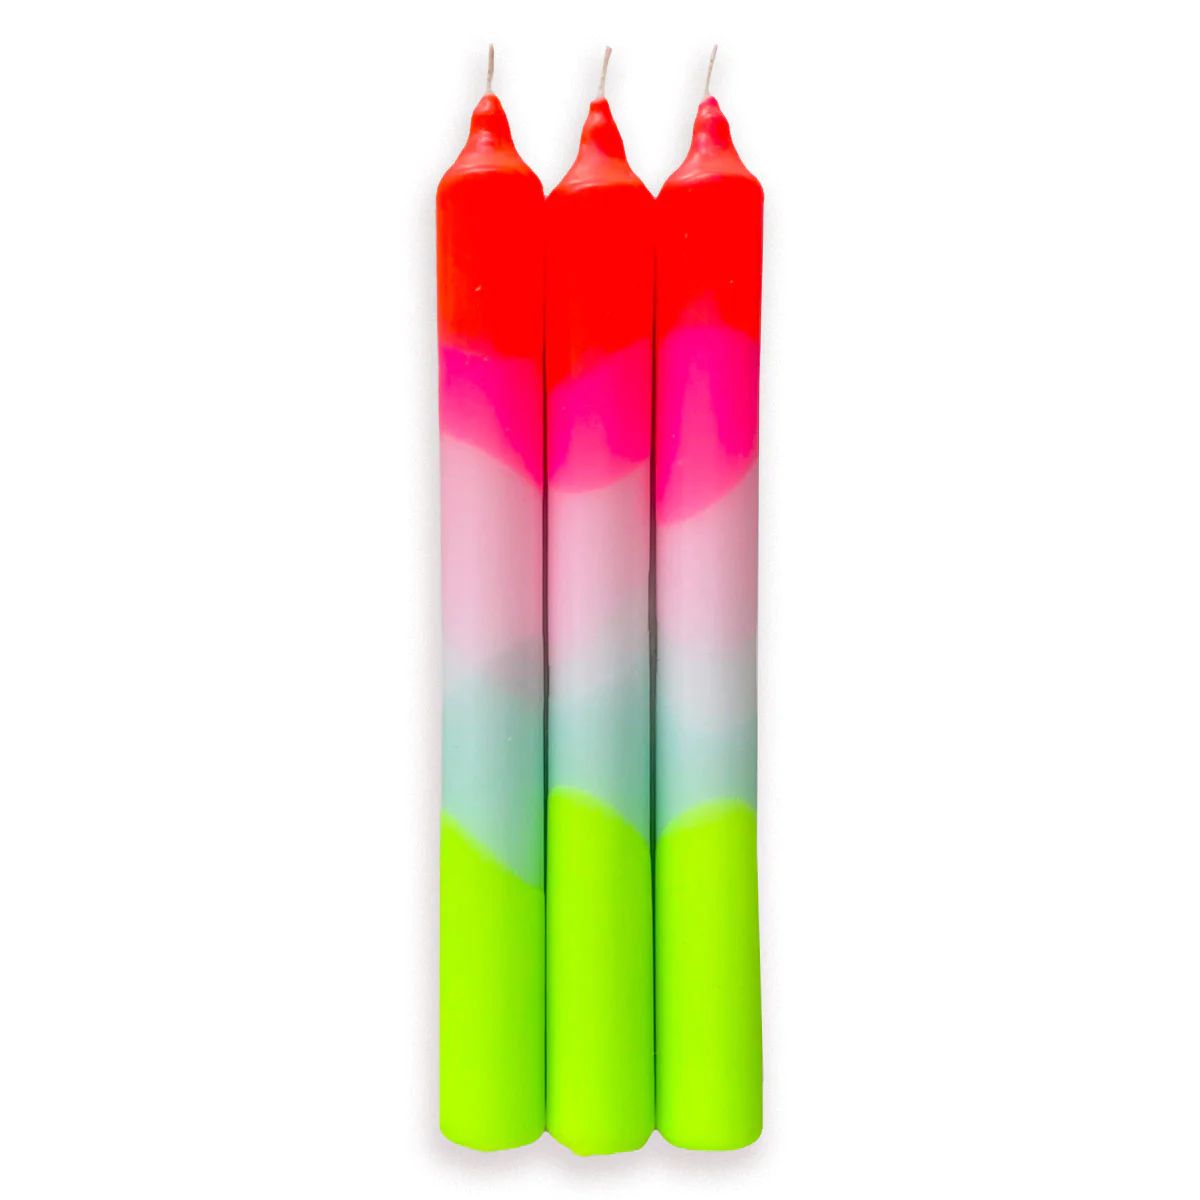 Furbish Studio - Dip Dye Neon Taper Candles S/3 | Furbish Studio